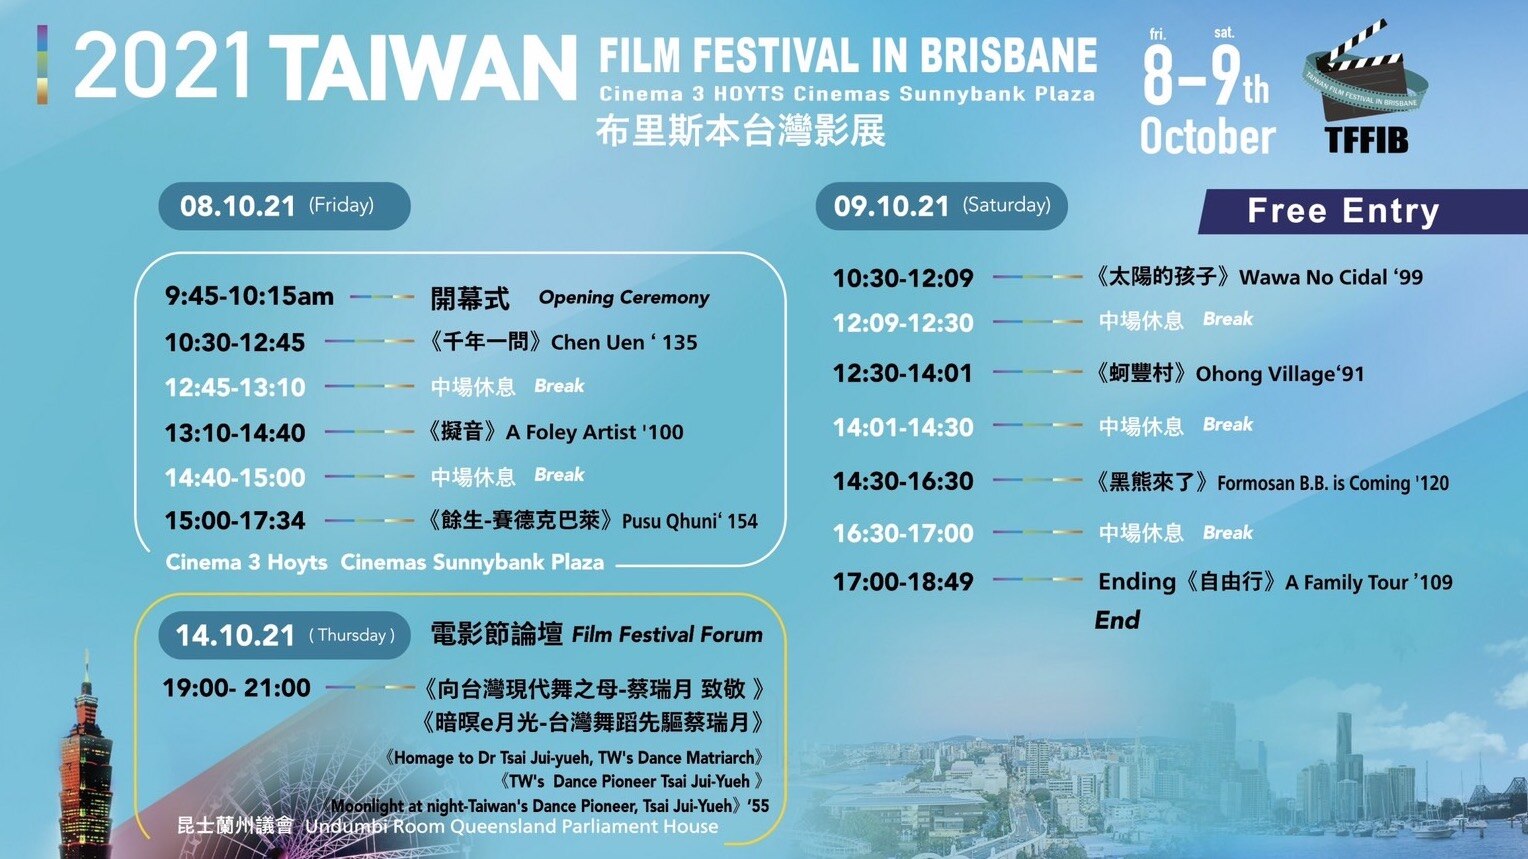 Taiwan Film Festival in Brisbane